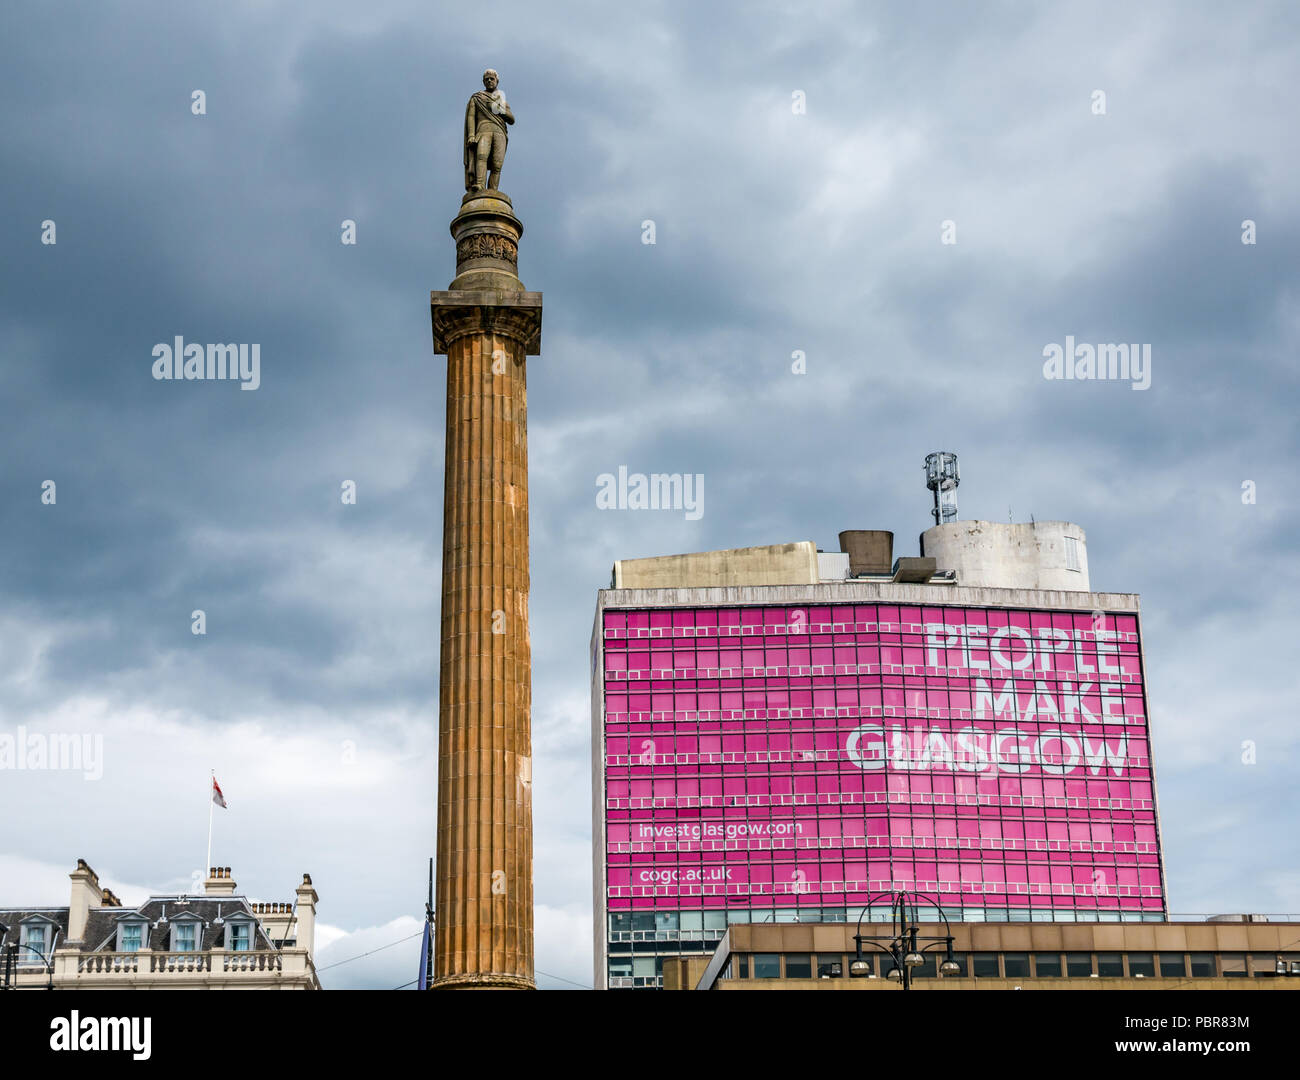 Sir Walter Scott Memorial Spalte Statue und rosa Menschen machen Glasgow Anzeige mit stürmischen Himmel, George Square, Glasgow, Schottland, Großbritannien Stockfoto